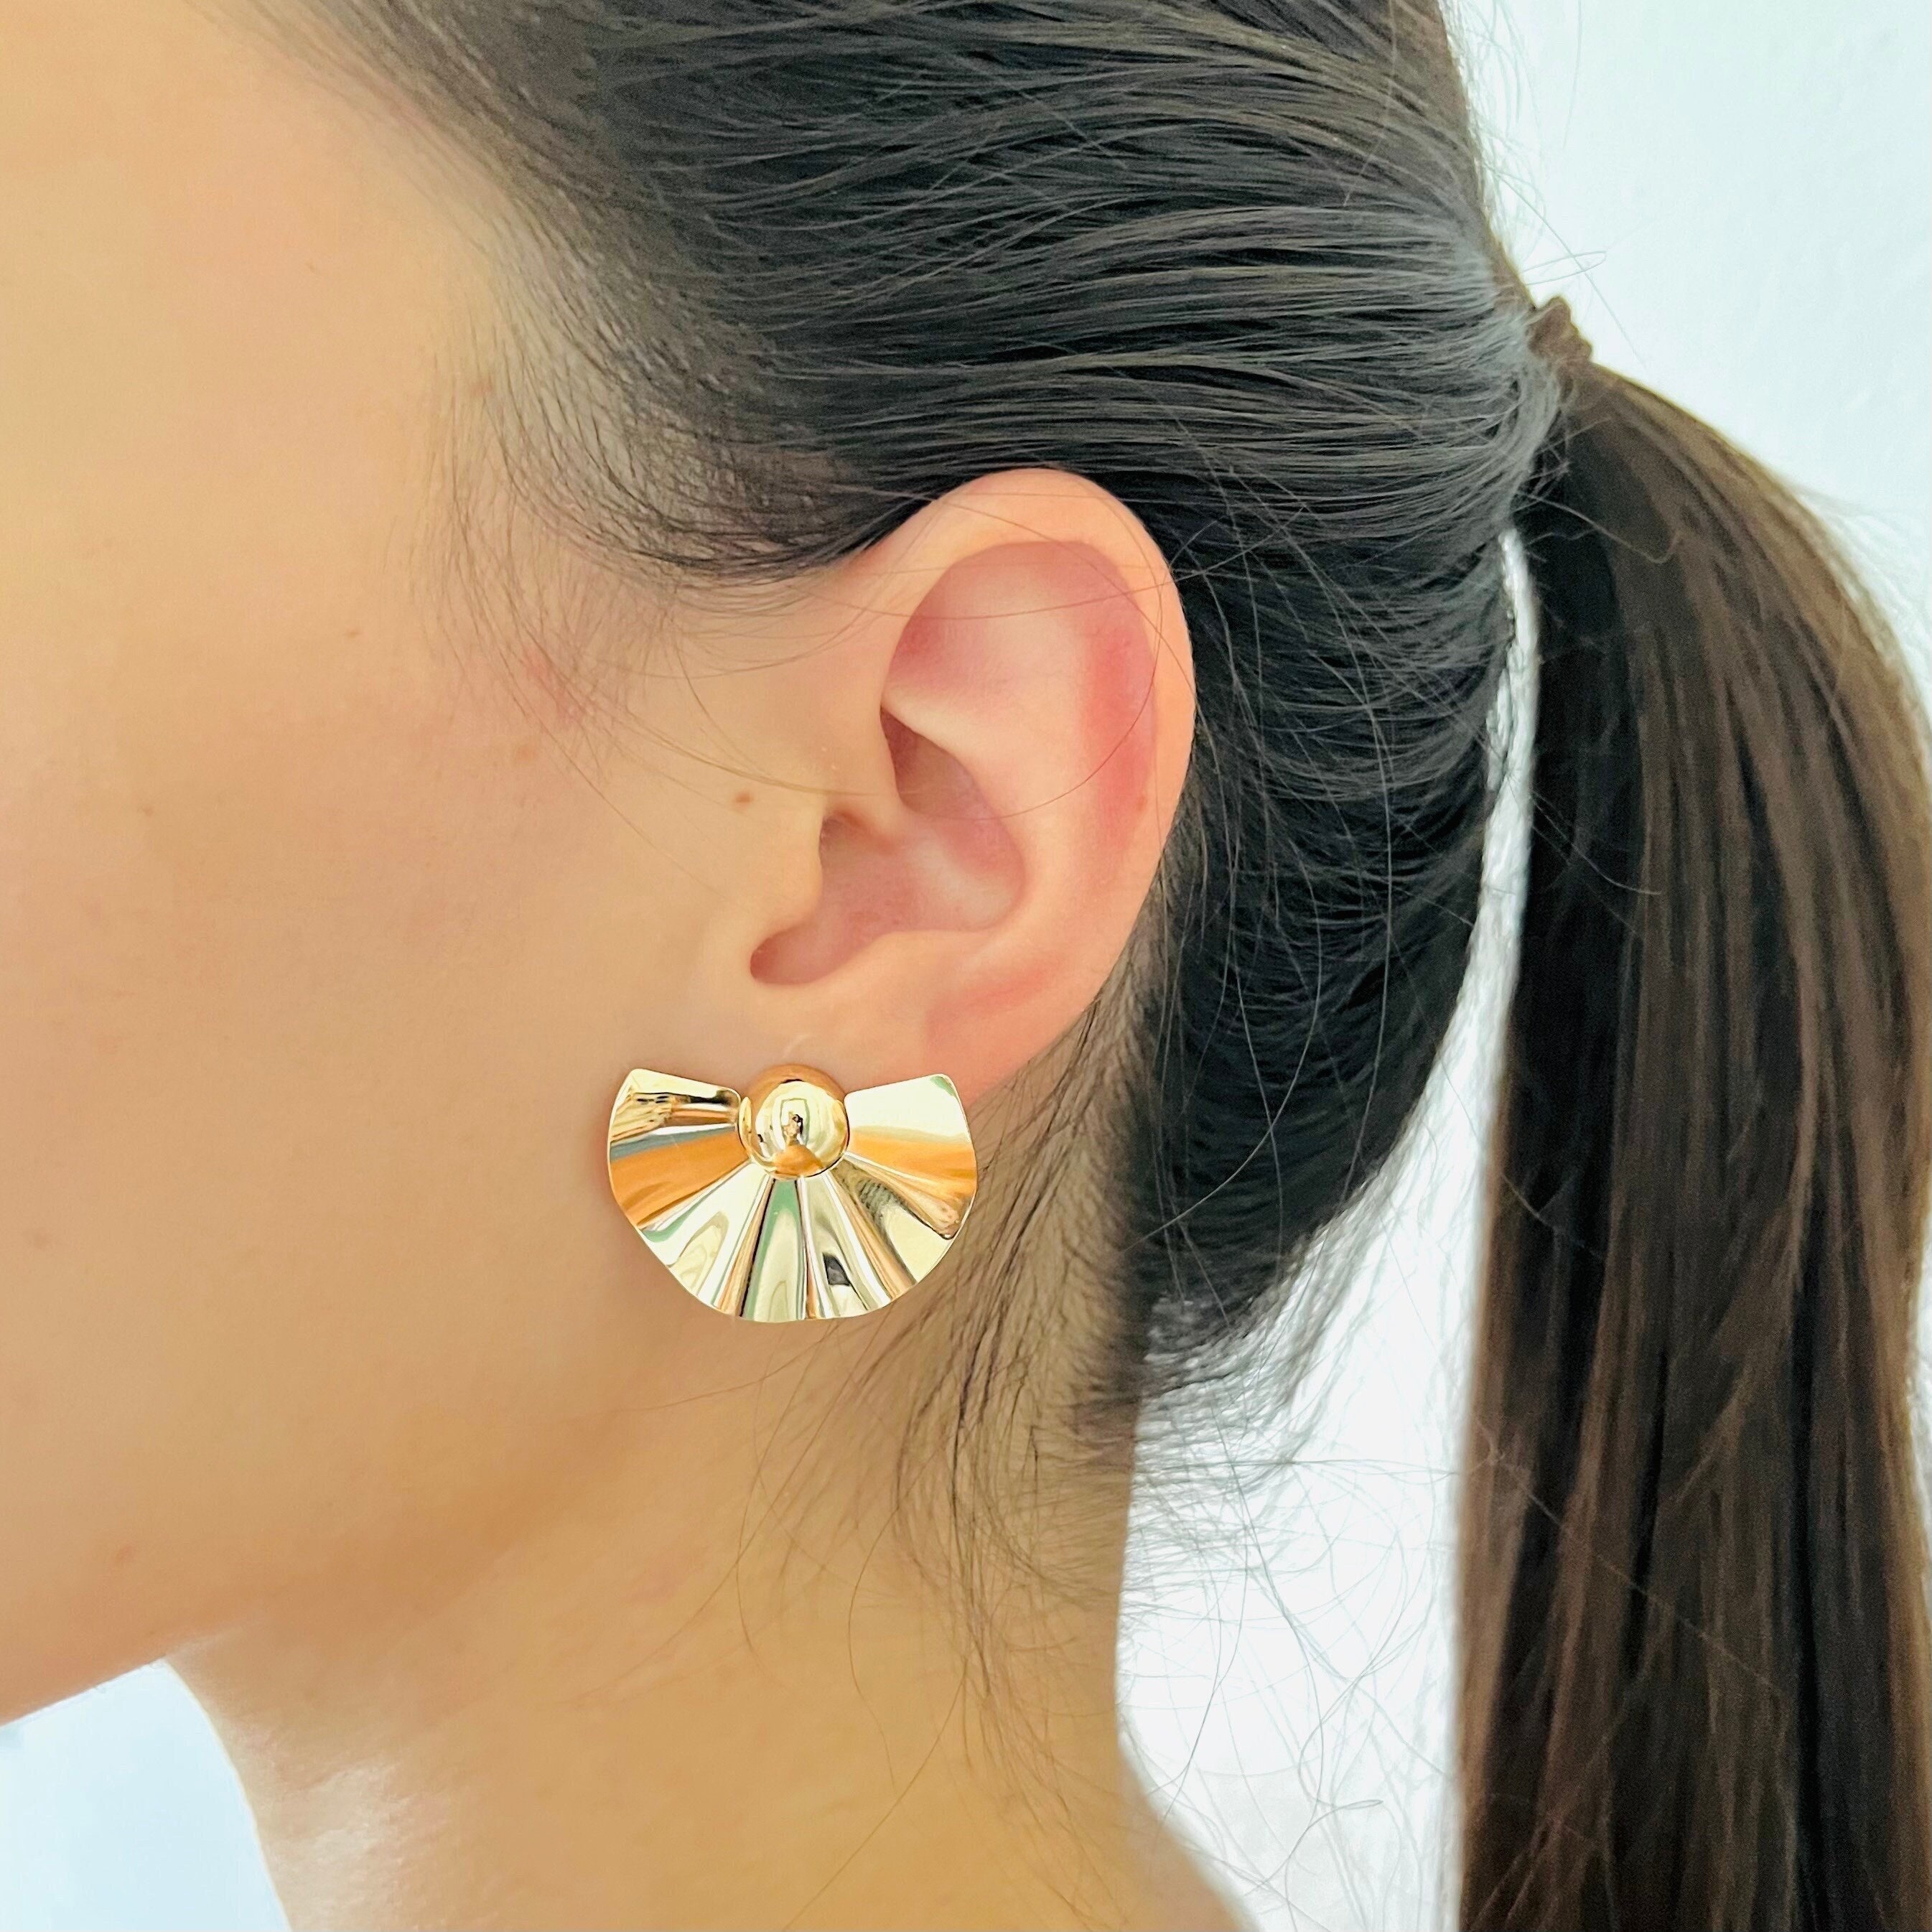 4pcs CZ Paved Gold Fan Shape Earring Posts, Gold Plated Brass Fan Stud  Earrings (#GB-3481) - AliExpress